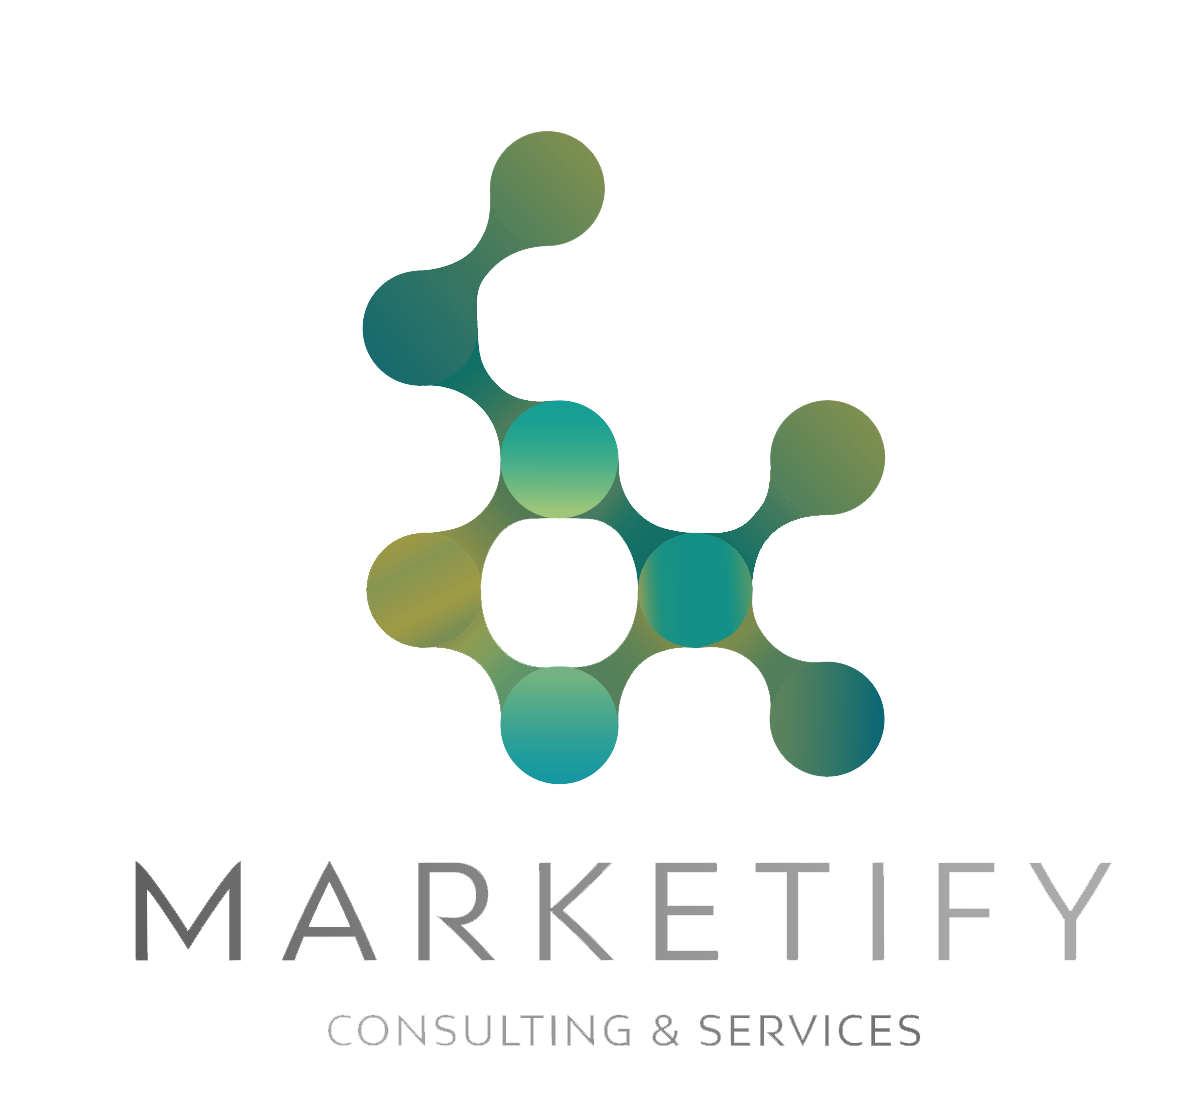 Logo Marketify